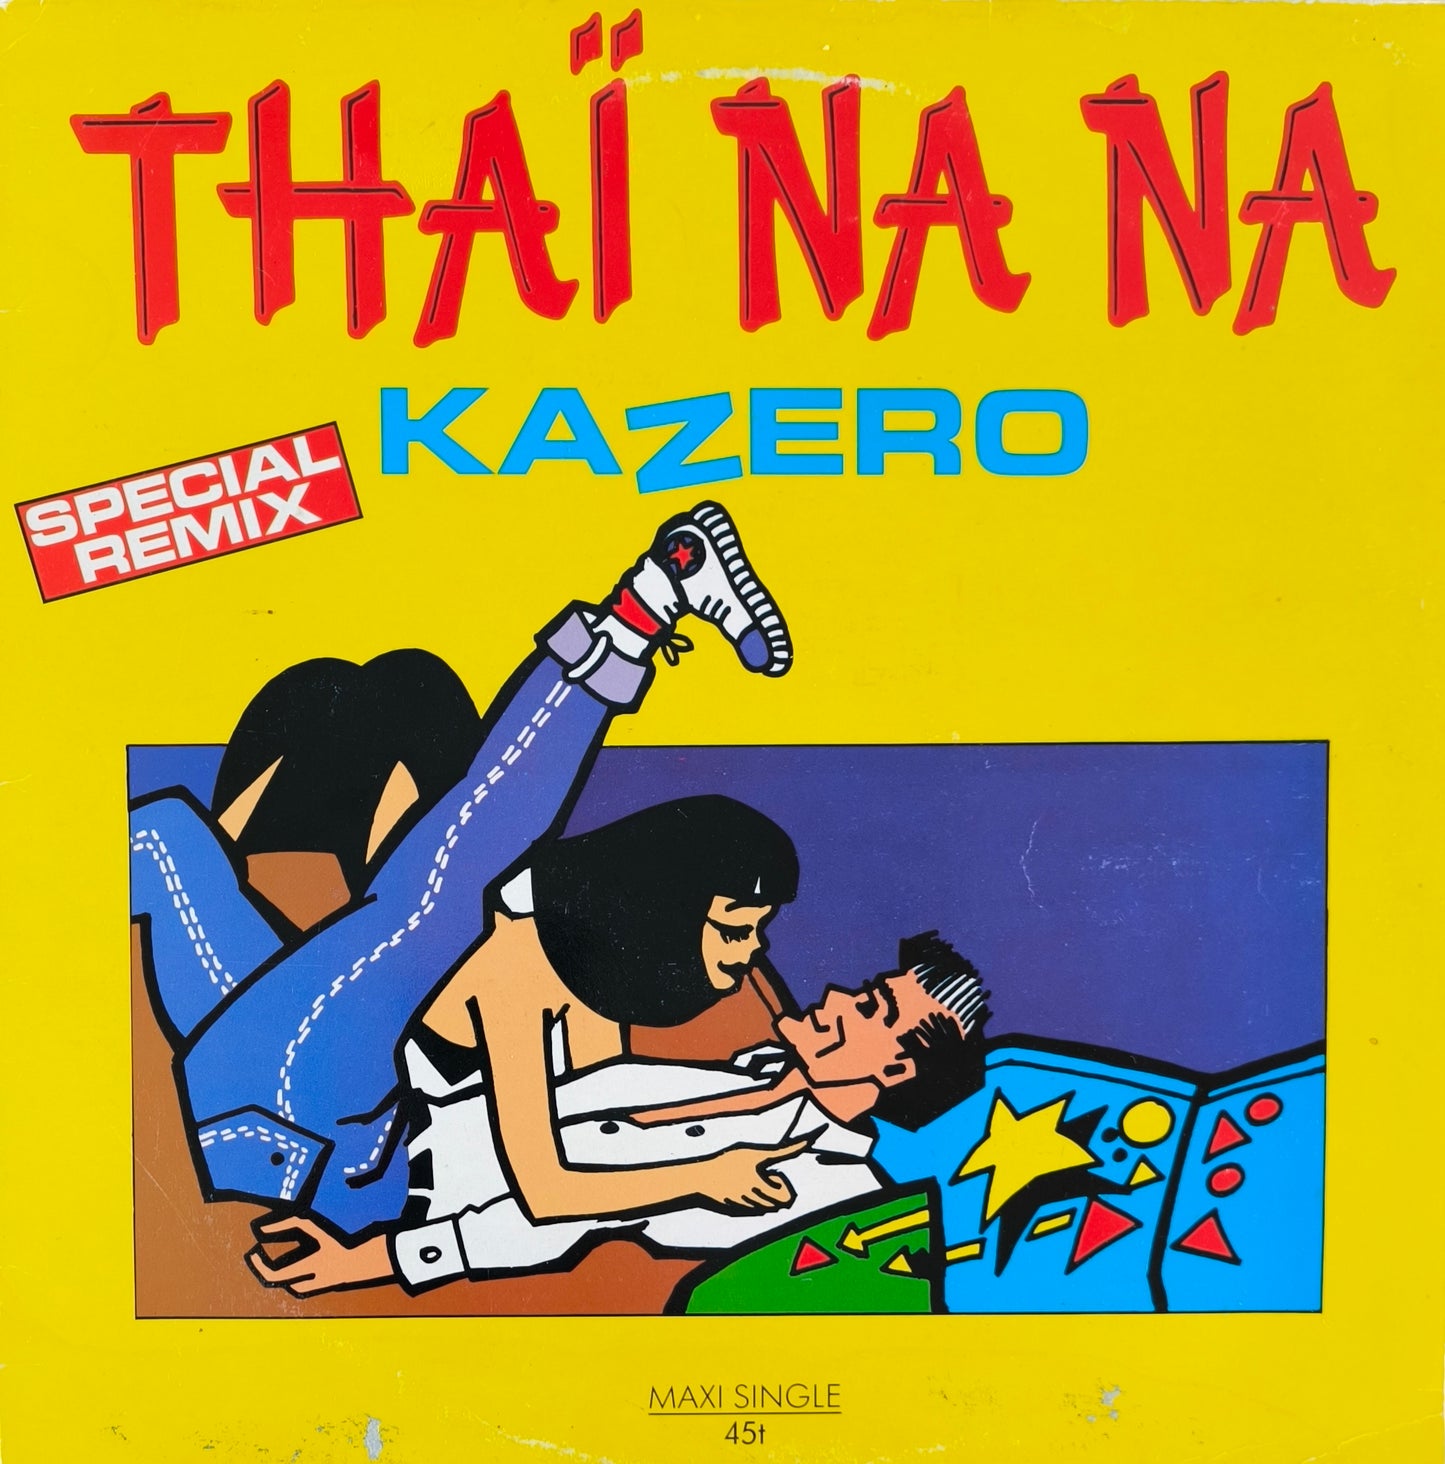 KAZERO - Thaï Nana